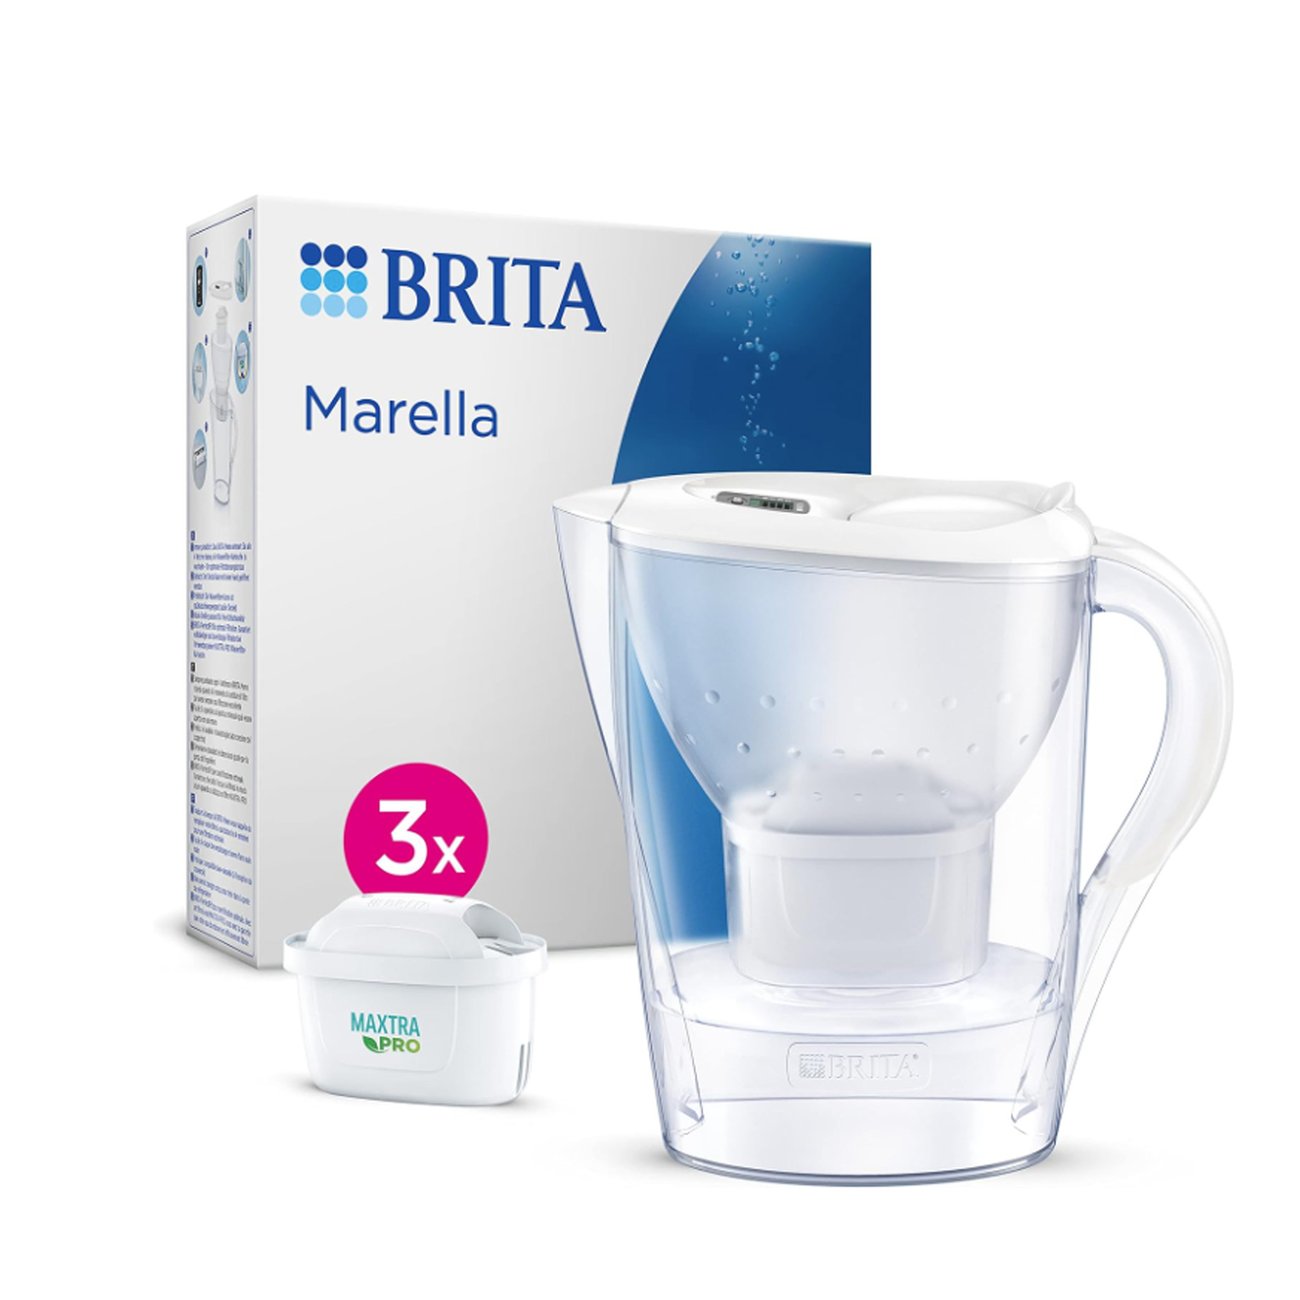 BRITA Wasserfilter-Kanne Marella inkl. 3x MAXTRA PRO All-in-1 Kartusche